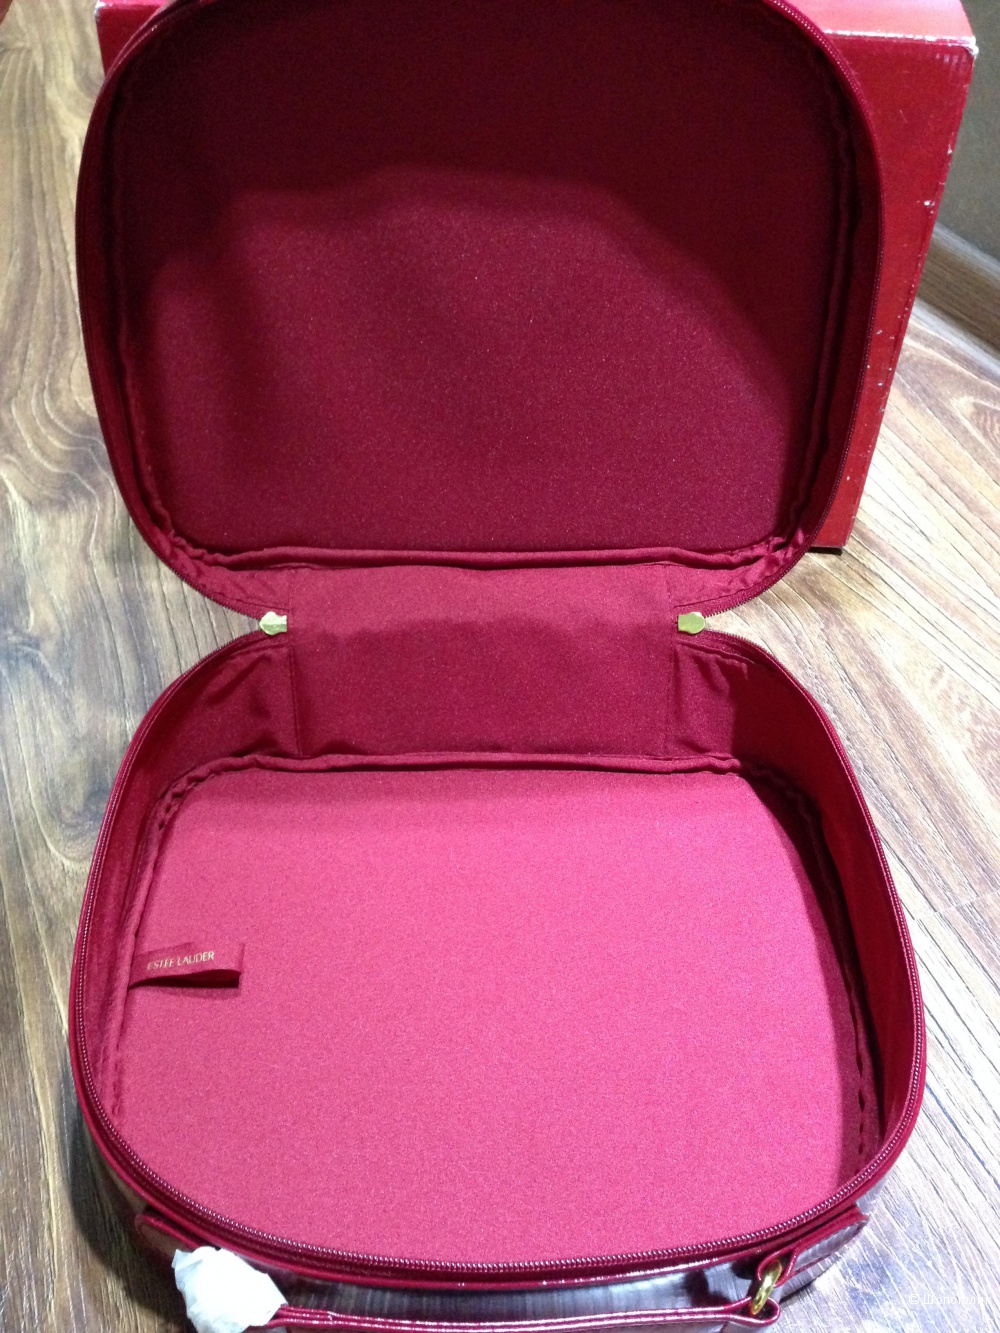 Estée Lauder чемодан для косметики в коробке.Новый